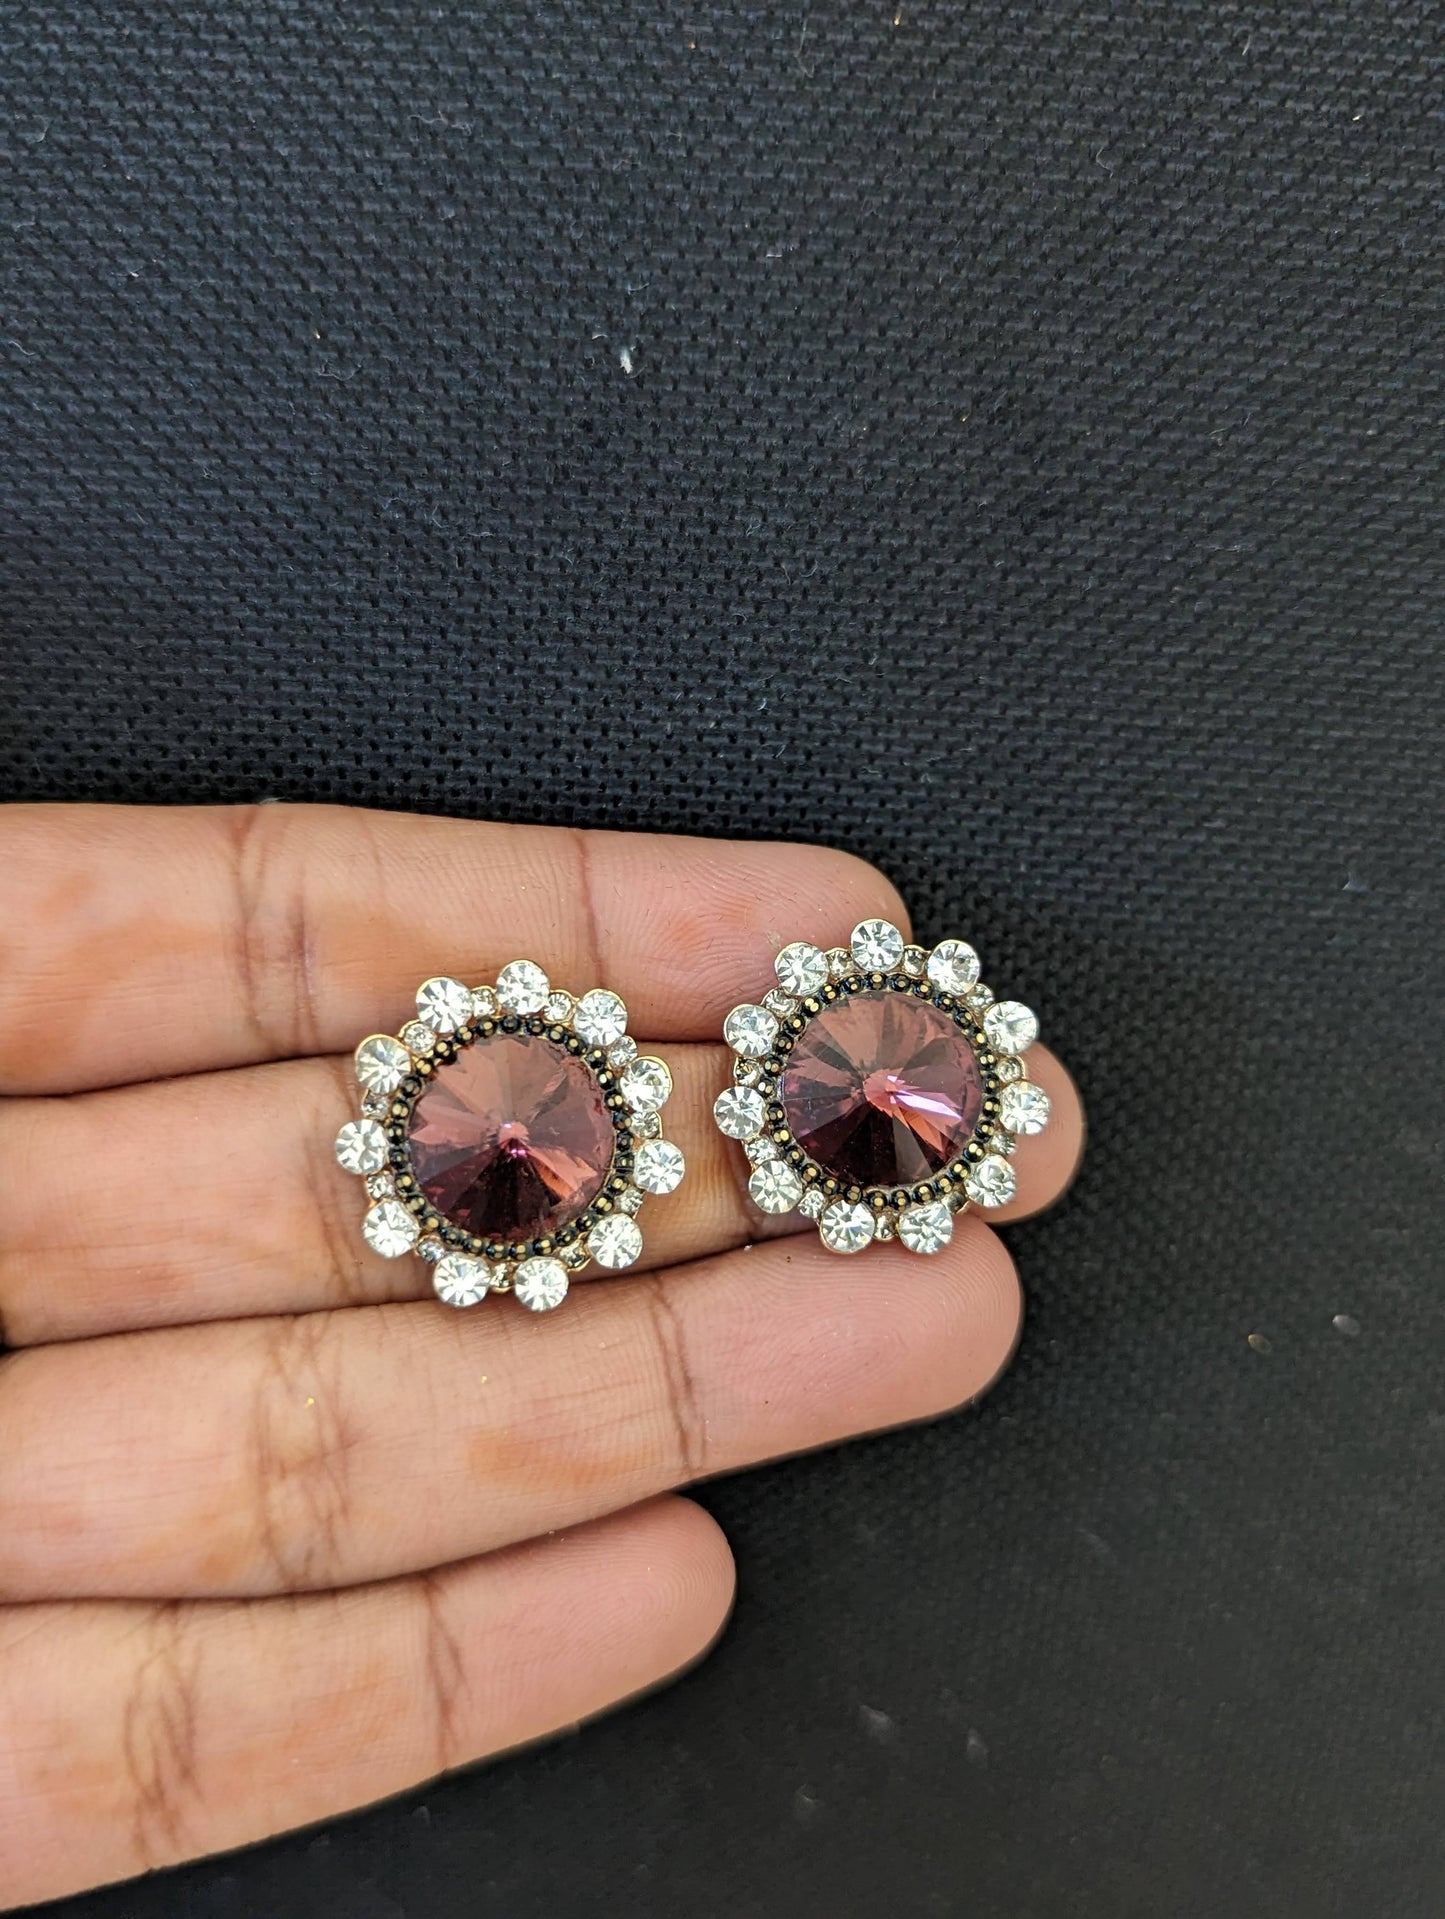 Rhinestone stud earrings